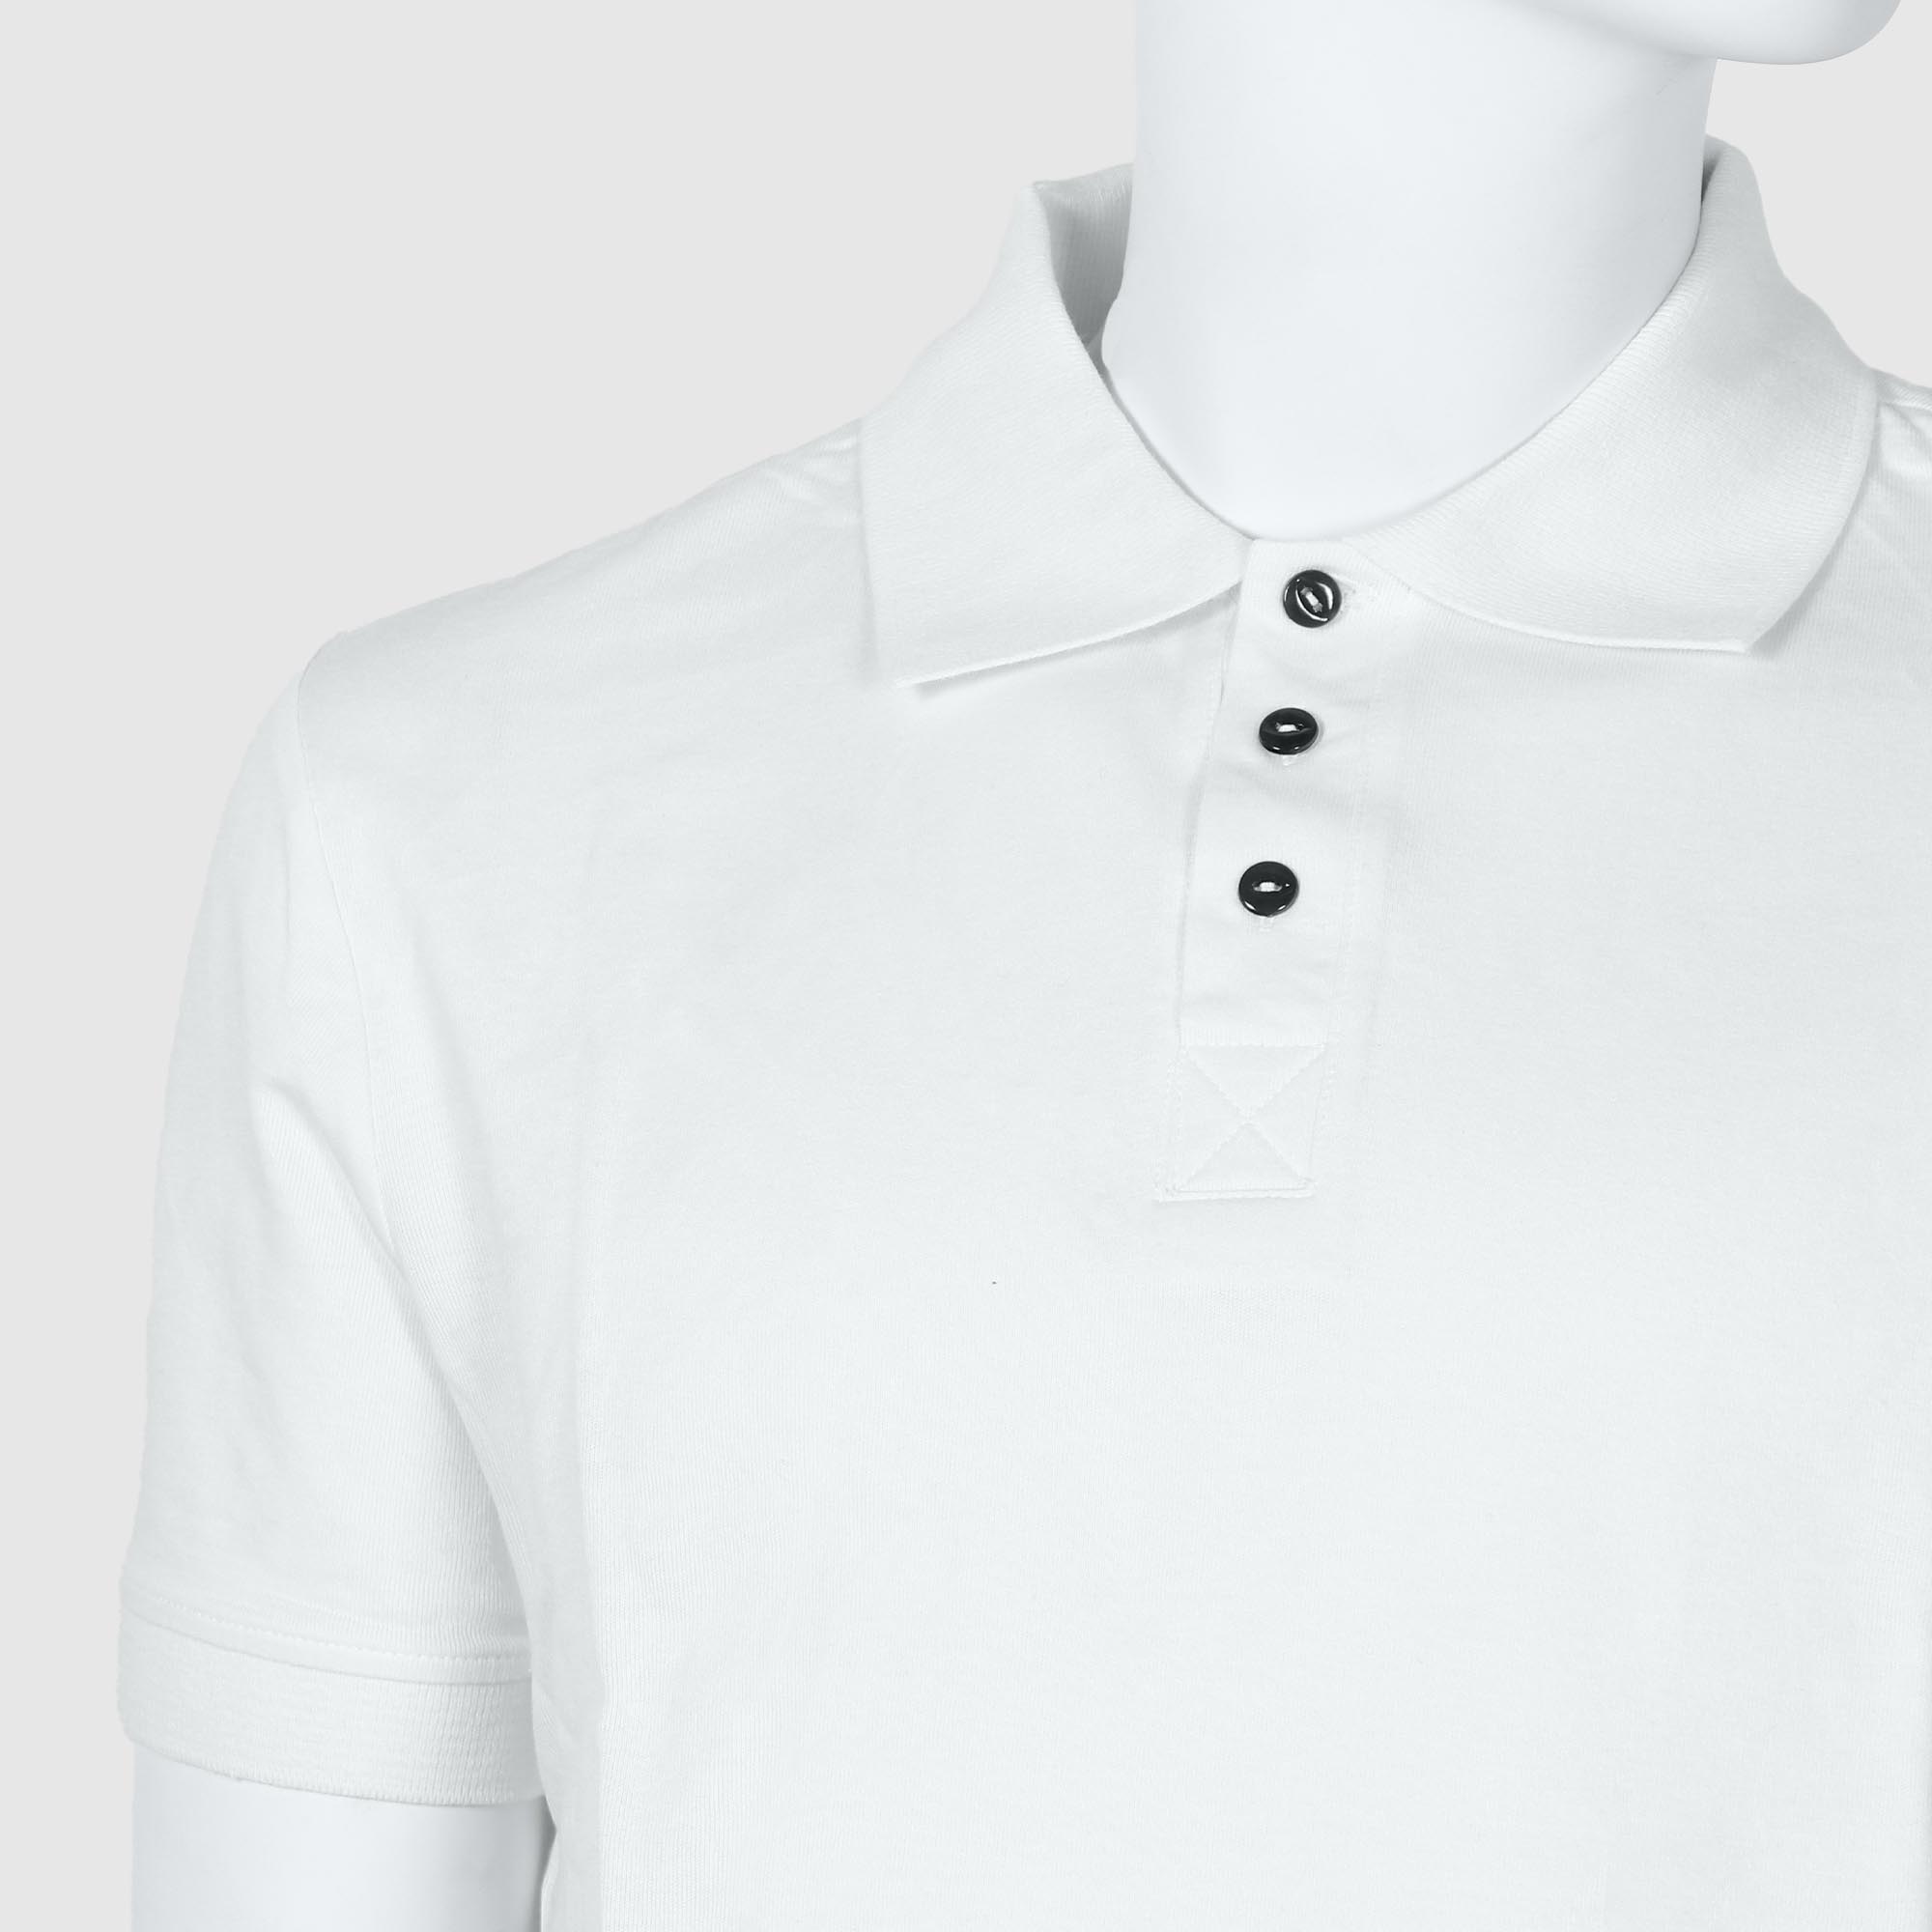 Мужская футболка-поло Diva Teks белая (DTD-07), цвет белый, размер 48-50 - фото 3